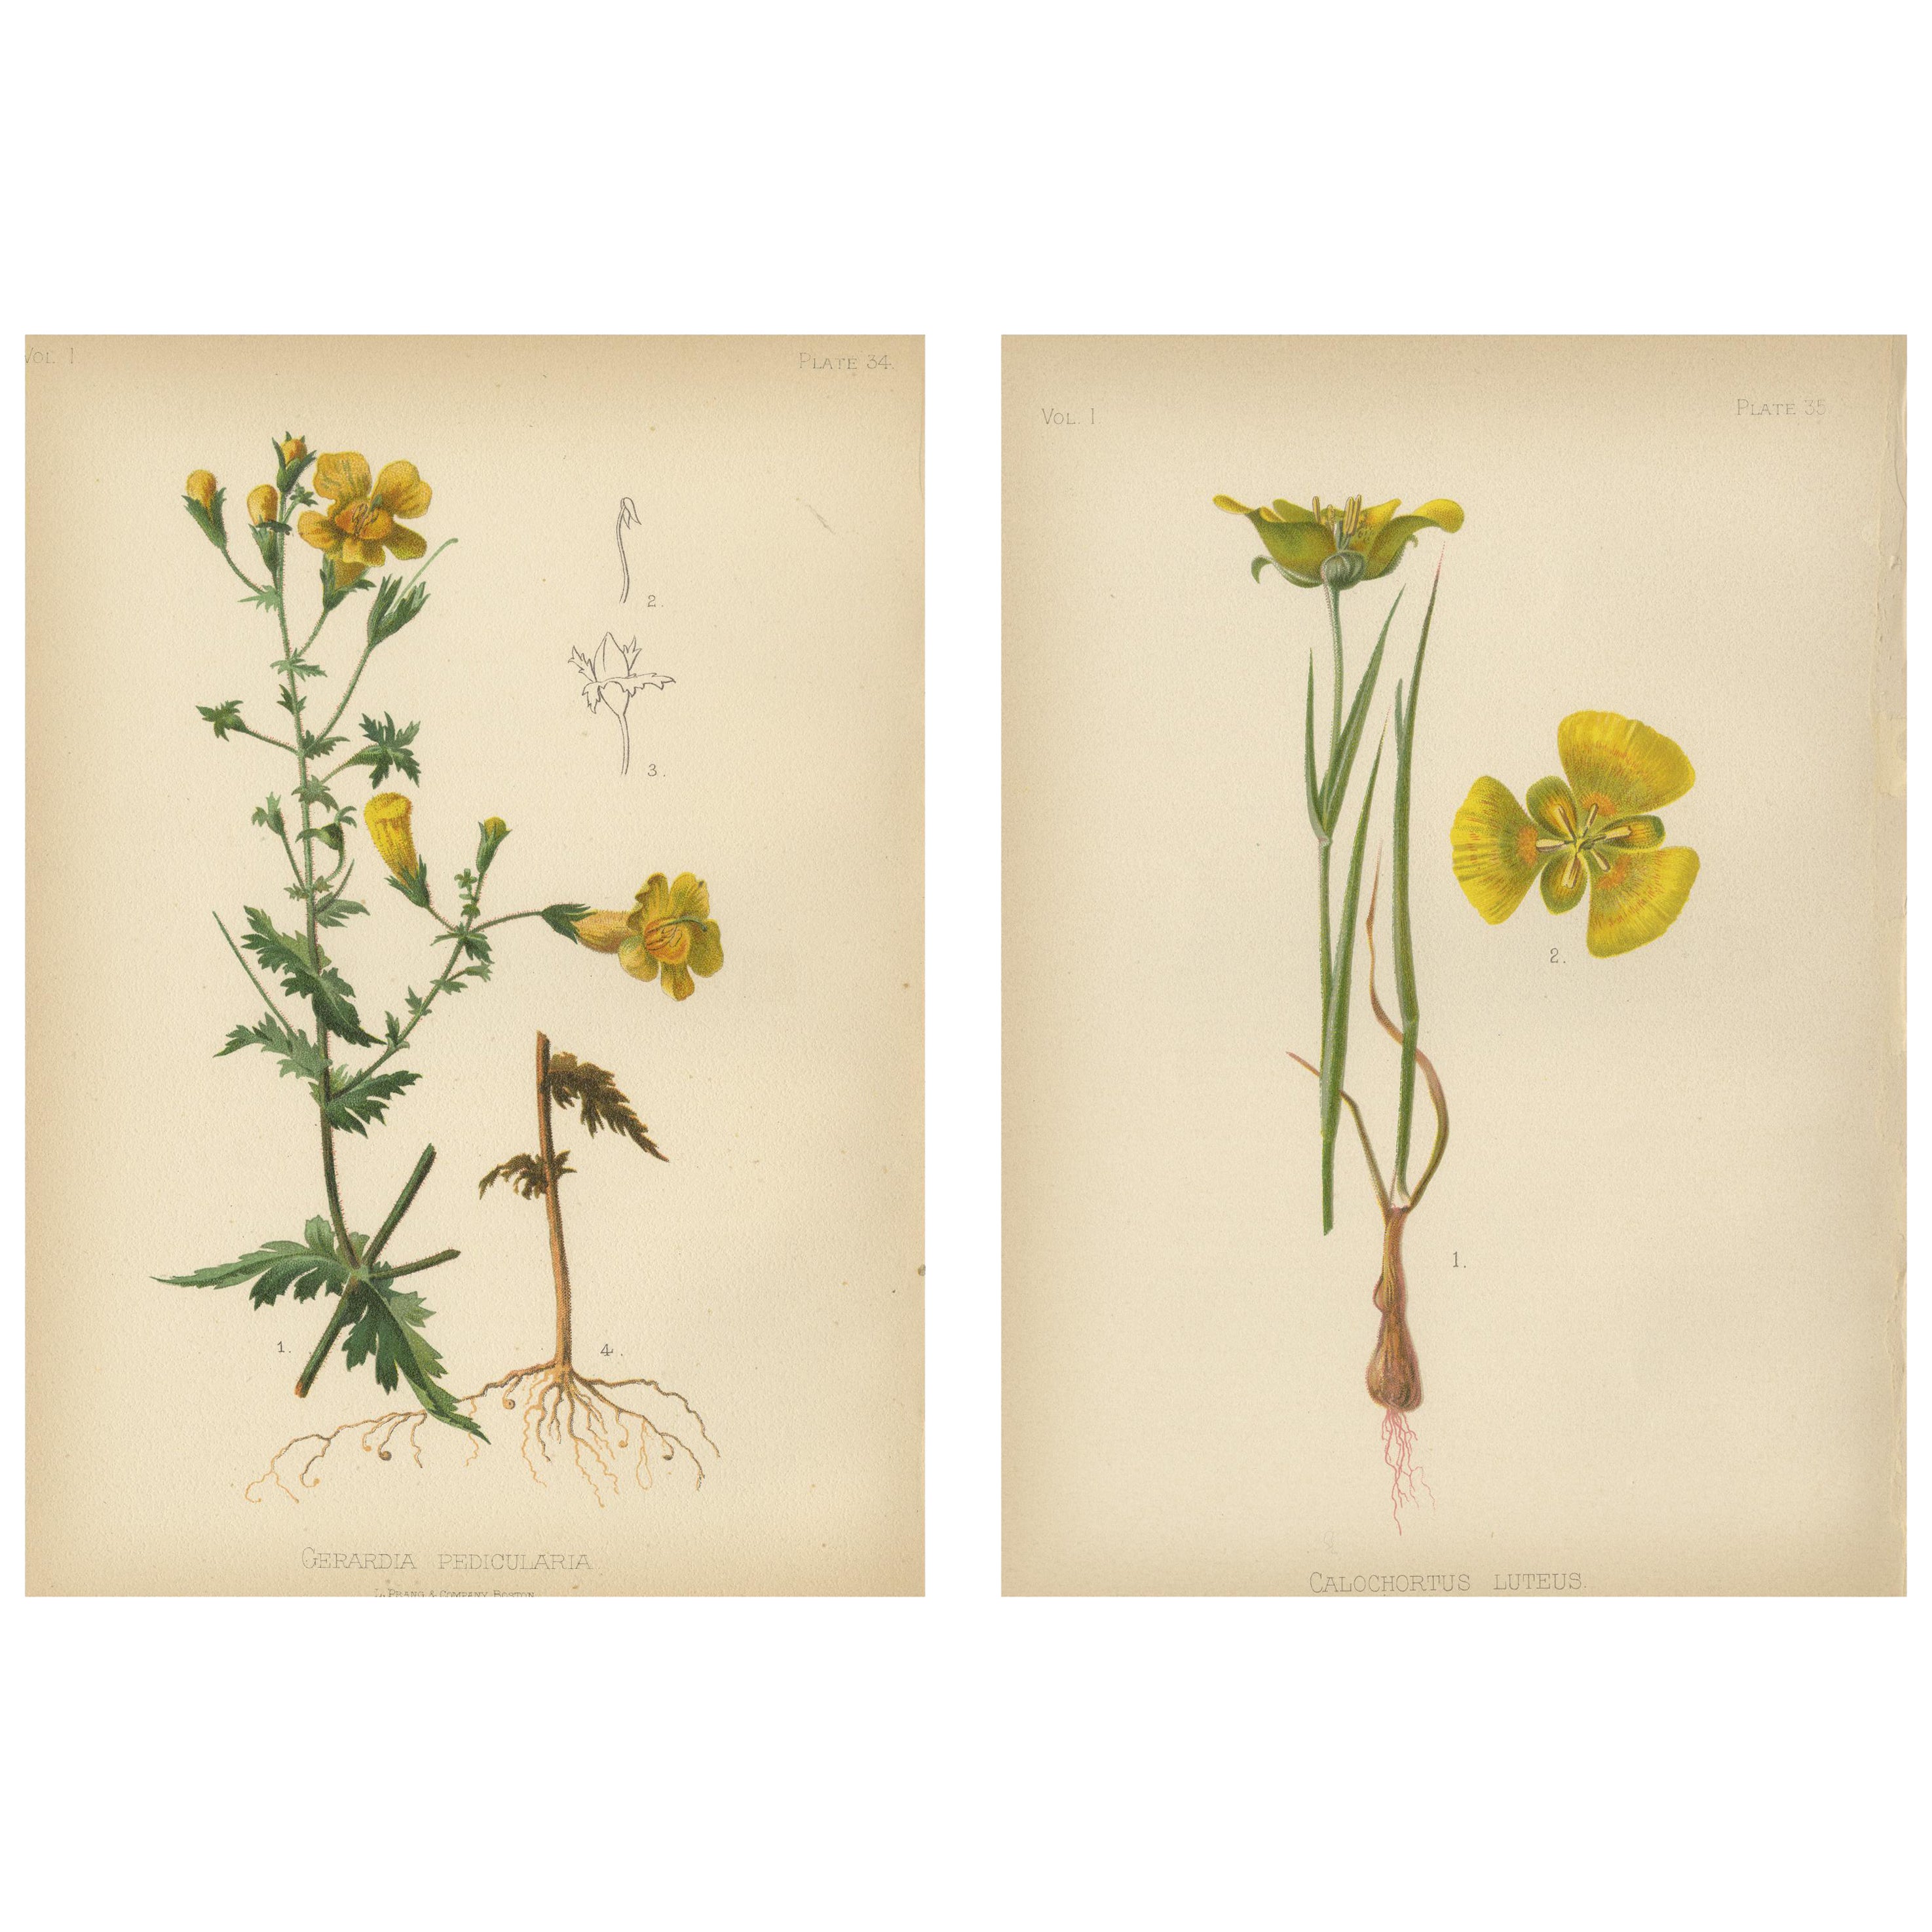 Native US Flora - Two Original Botanical Chromolithograps, 1879